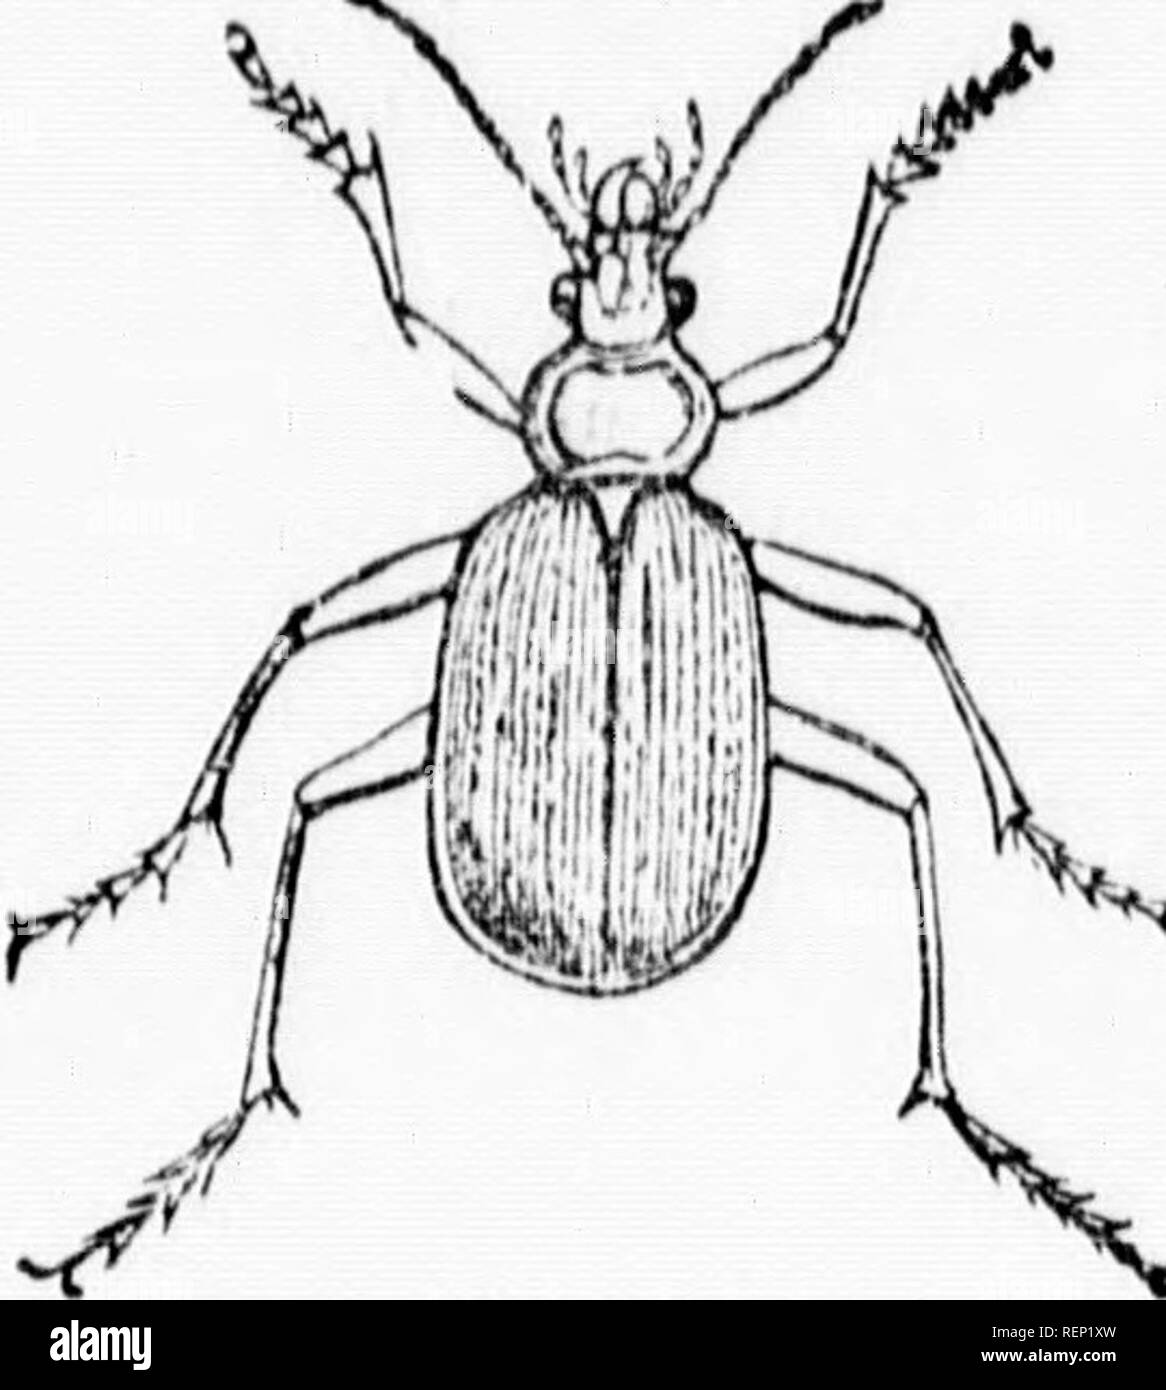 . Relazione della entomologo (James Fletcher, F.R.S.C.), 1885 [microformati]. Pesti di insetto; Insectes nuisibles. 44. Fig. 22. Calosoma scrutator. ll^oly t Ji:'^.:SZ-IE â ¢ 2?I:Z^'j!^ '^'^ ^^ ^^-otablo importa a. La maggior parte invece, richiedono woll-devolonod meanTihr m. J i^", âT*!Â P''*^'^'!â"'^o"^Â"pocleB, hanno per la cattura di thoiV i,,V prima tSorcrde^^^^^^^^^ naovmg qu.ckly, perché thoy Thege due errori di battitura sono ben exomplifiod bv disegni ill.istrationH, Fig. 21 è il Colorado potato beetle-, un inattivo ma vorv insetto pregiudizievole. Fig. 22 è il verde di ospitare-- piiiarhuntor, un attivo Foto Stock